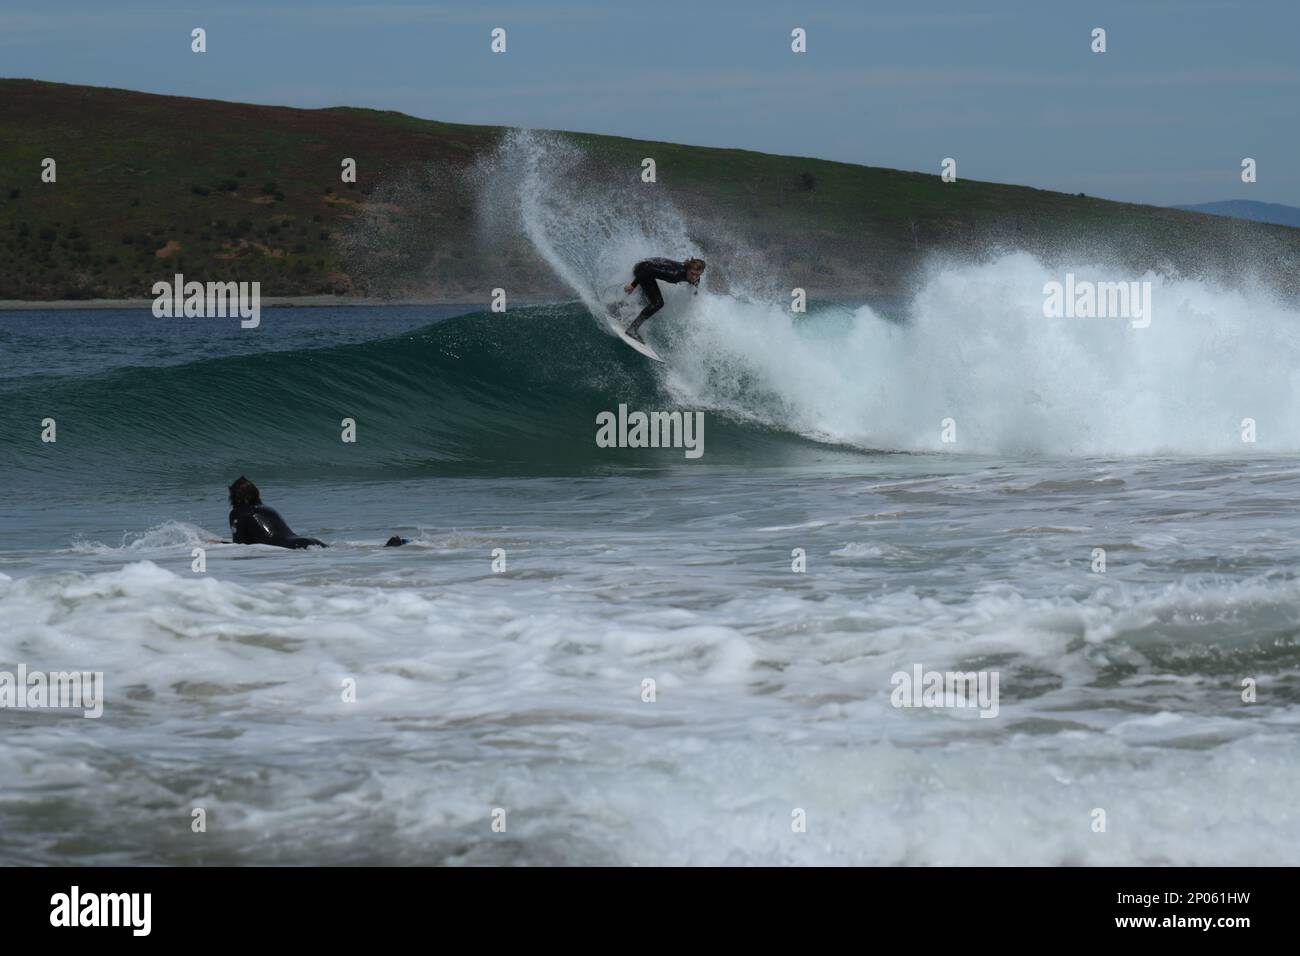 Un surfeur atteint le sommet de la vague envoyant un jet dans l'air devant le surfeur pagayant sur .Goes Island en arrière-plan Banque D'Images